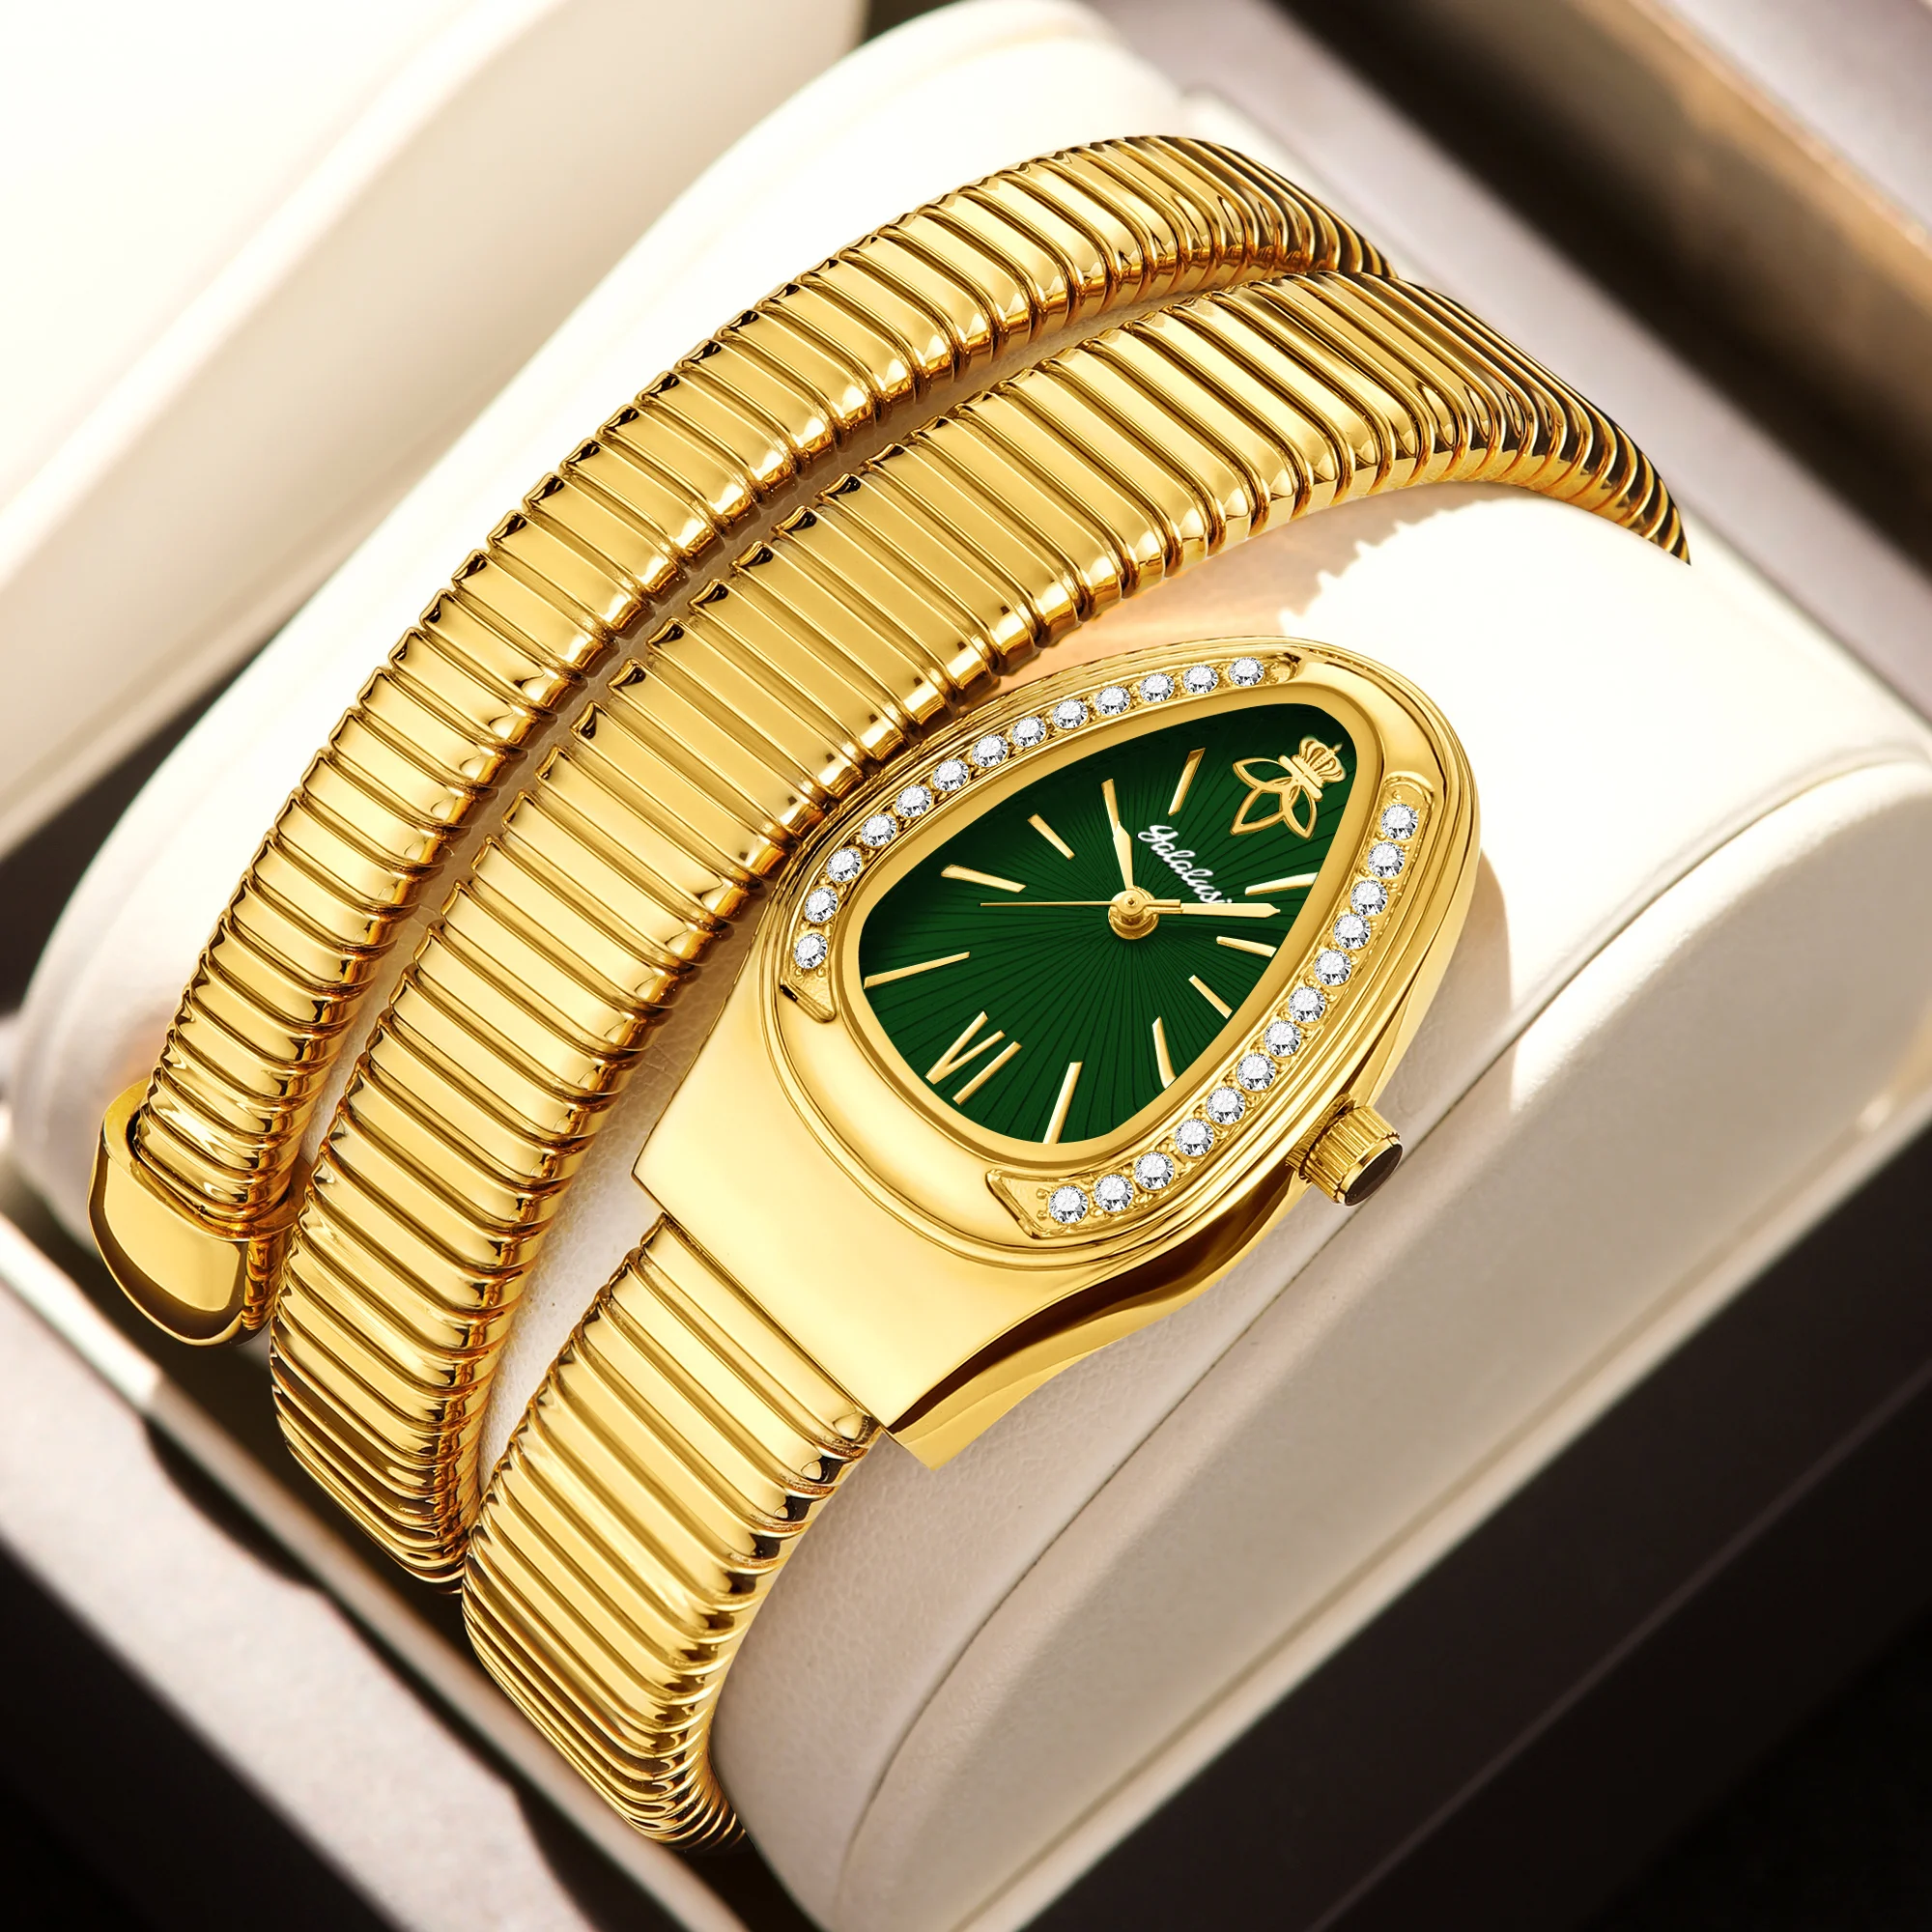 

YaLaLuSi Shining Diamond Fashion Quartz Watch For Women Snake Design Three Loop Bracelet Watches Relojes Para Mujer Gold-Green